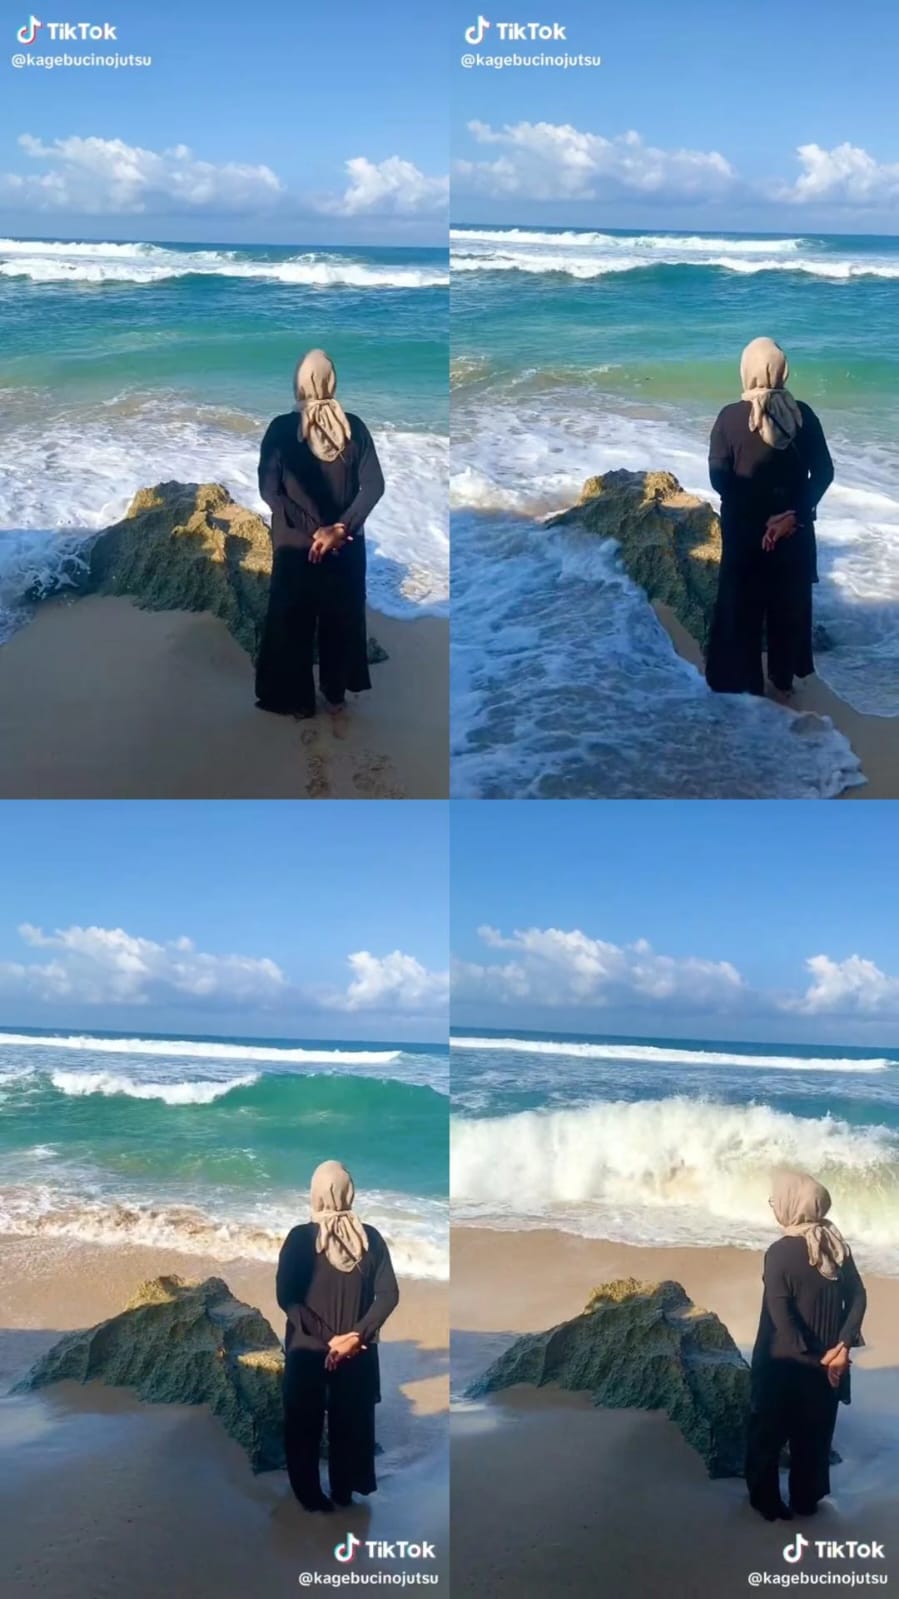 Niatnya healing, momen wanita saat berfoto di pantai ini endingnya gagal estetik parah